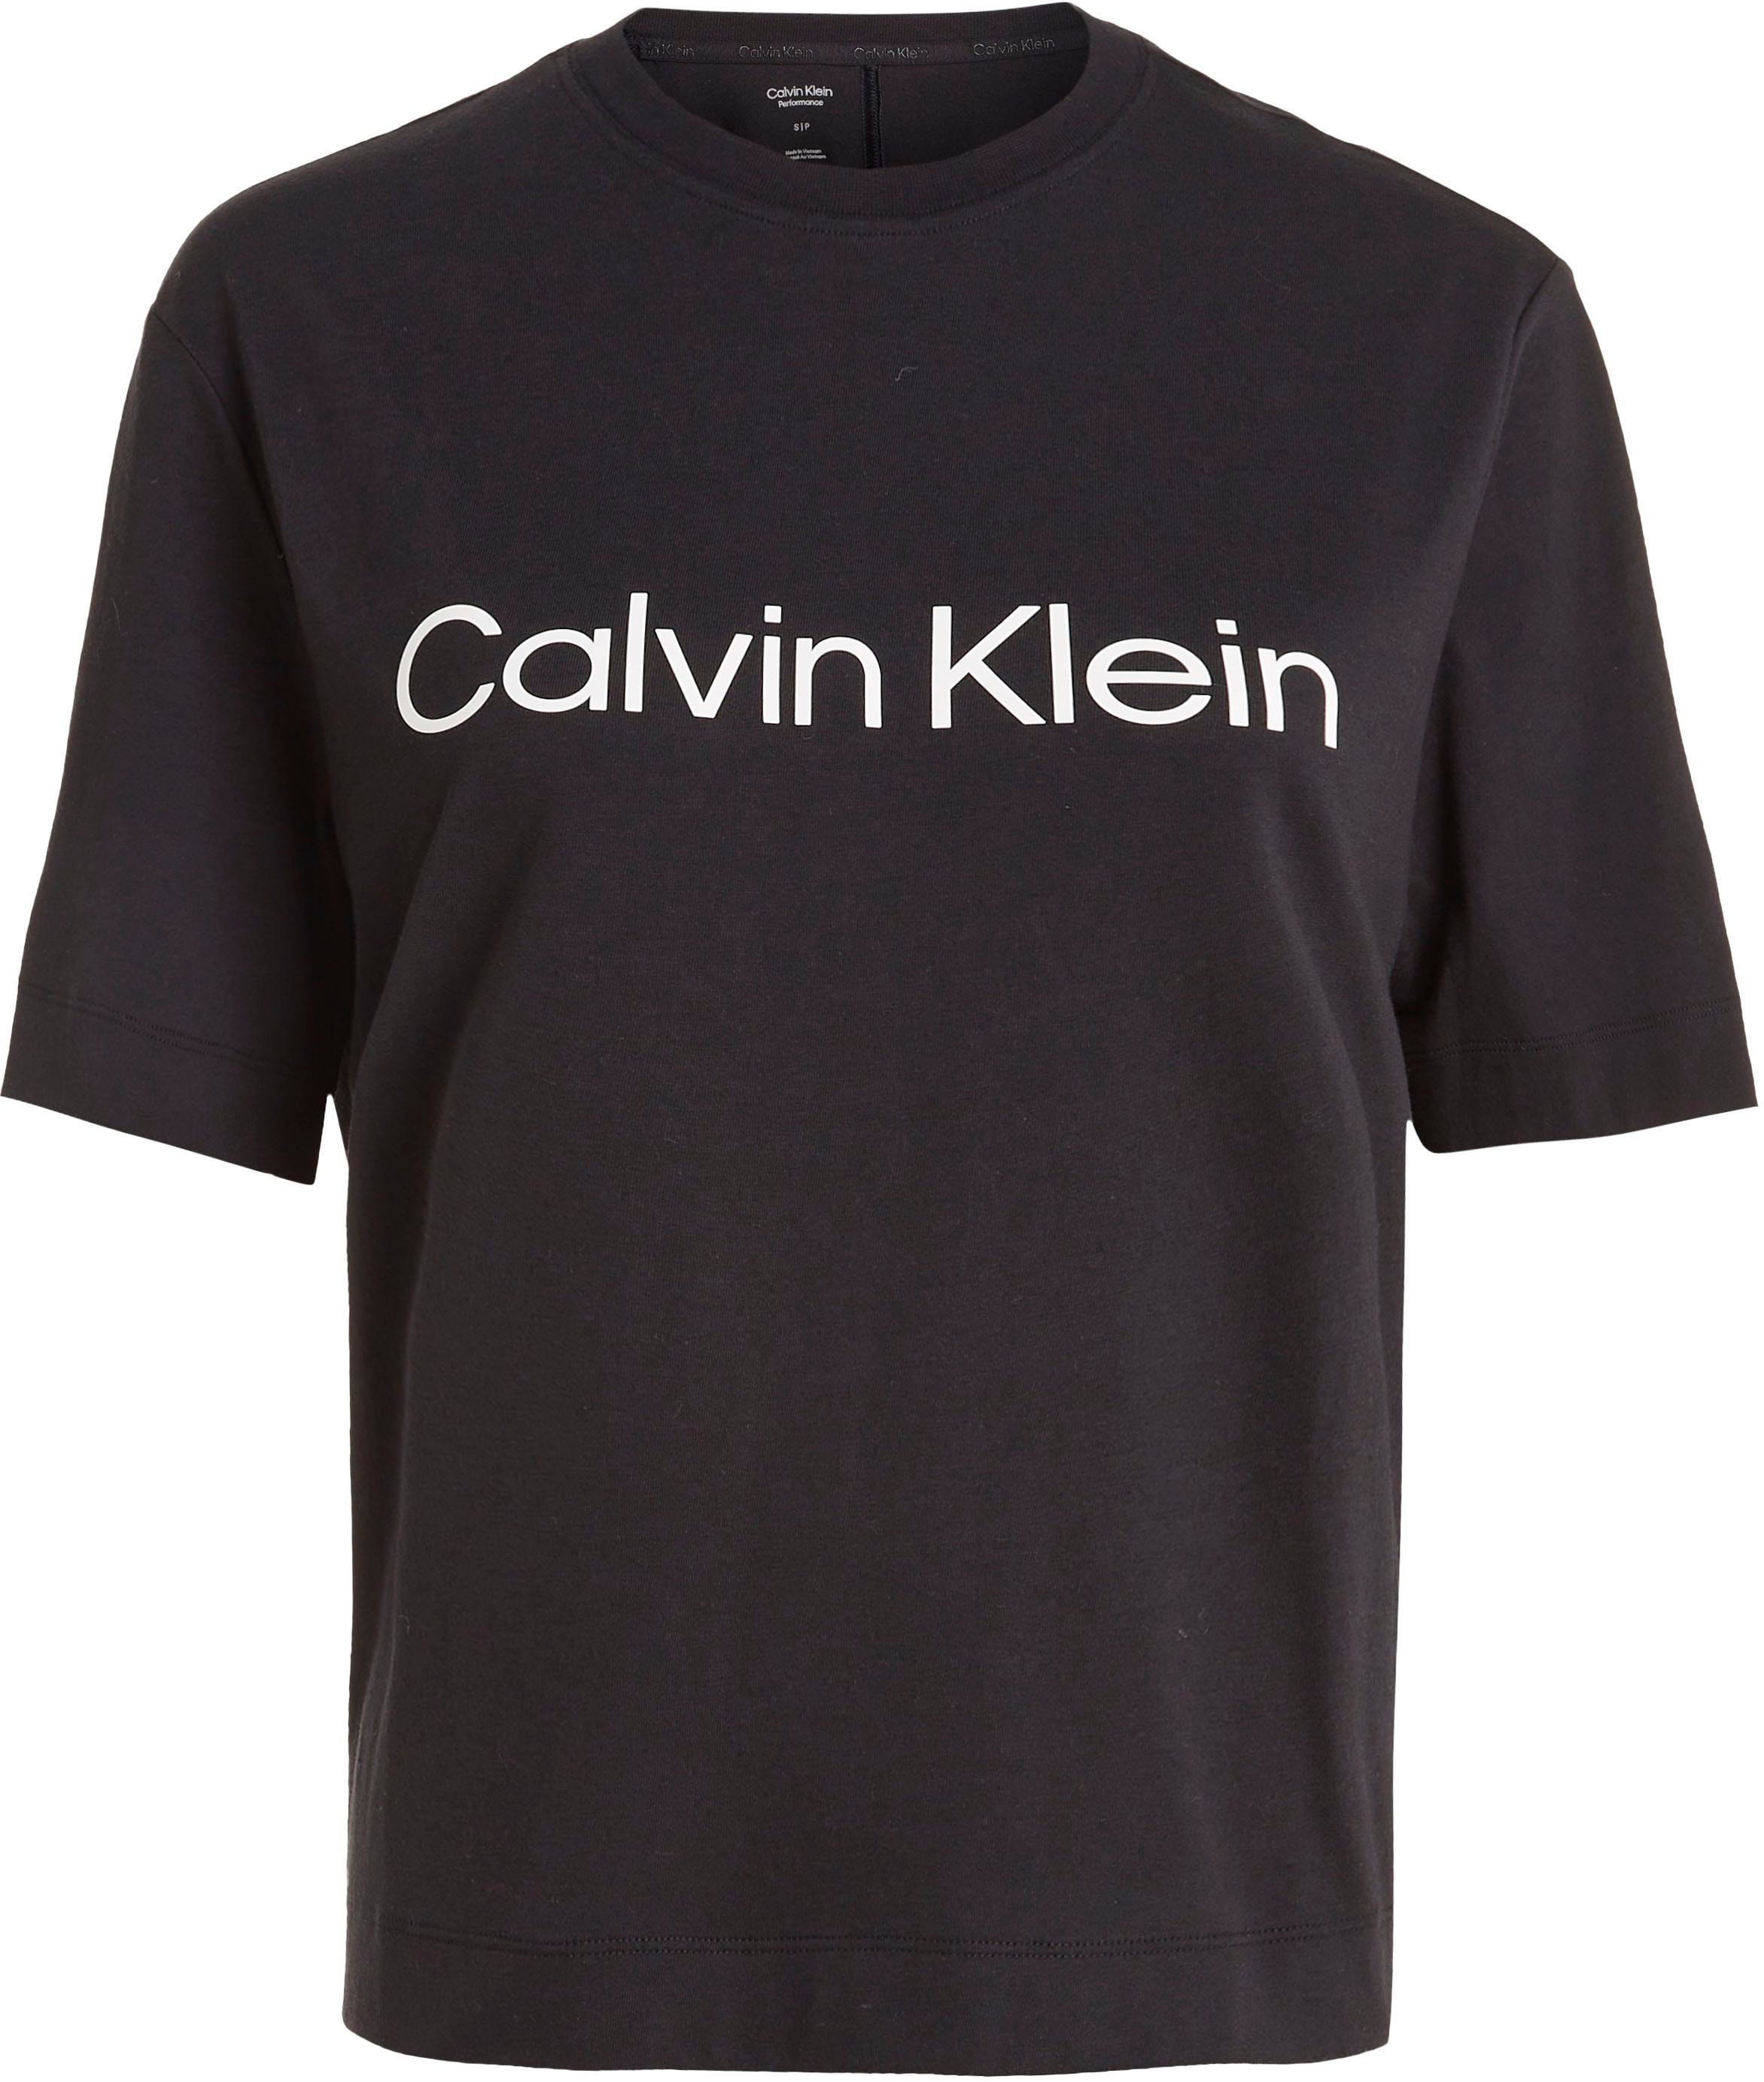 bei T-Shirt online Calvin Sport kaufen OTTO Klein